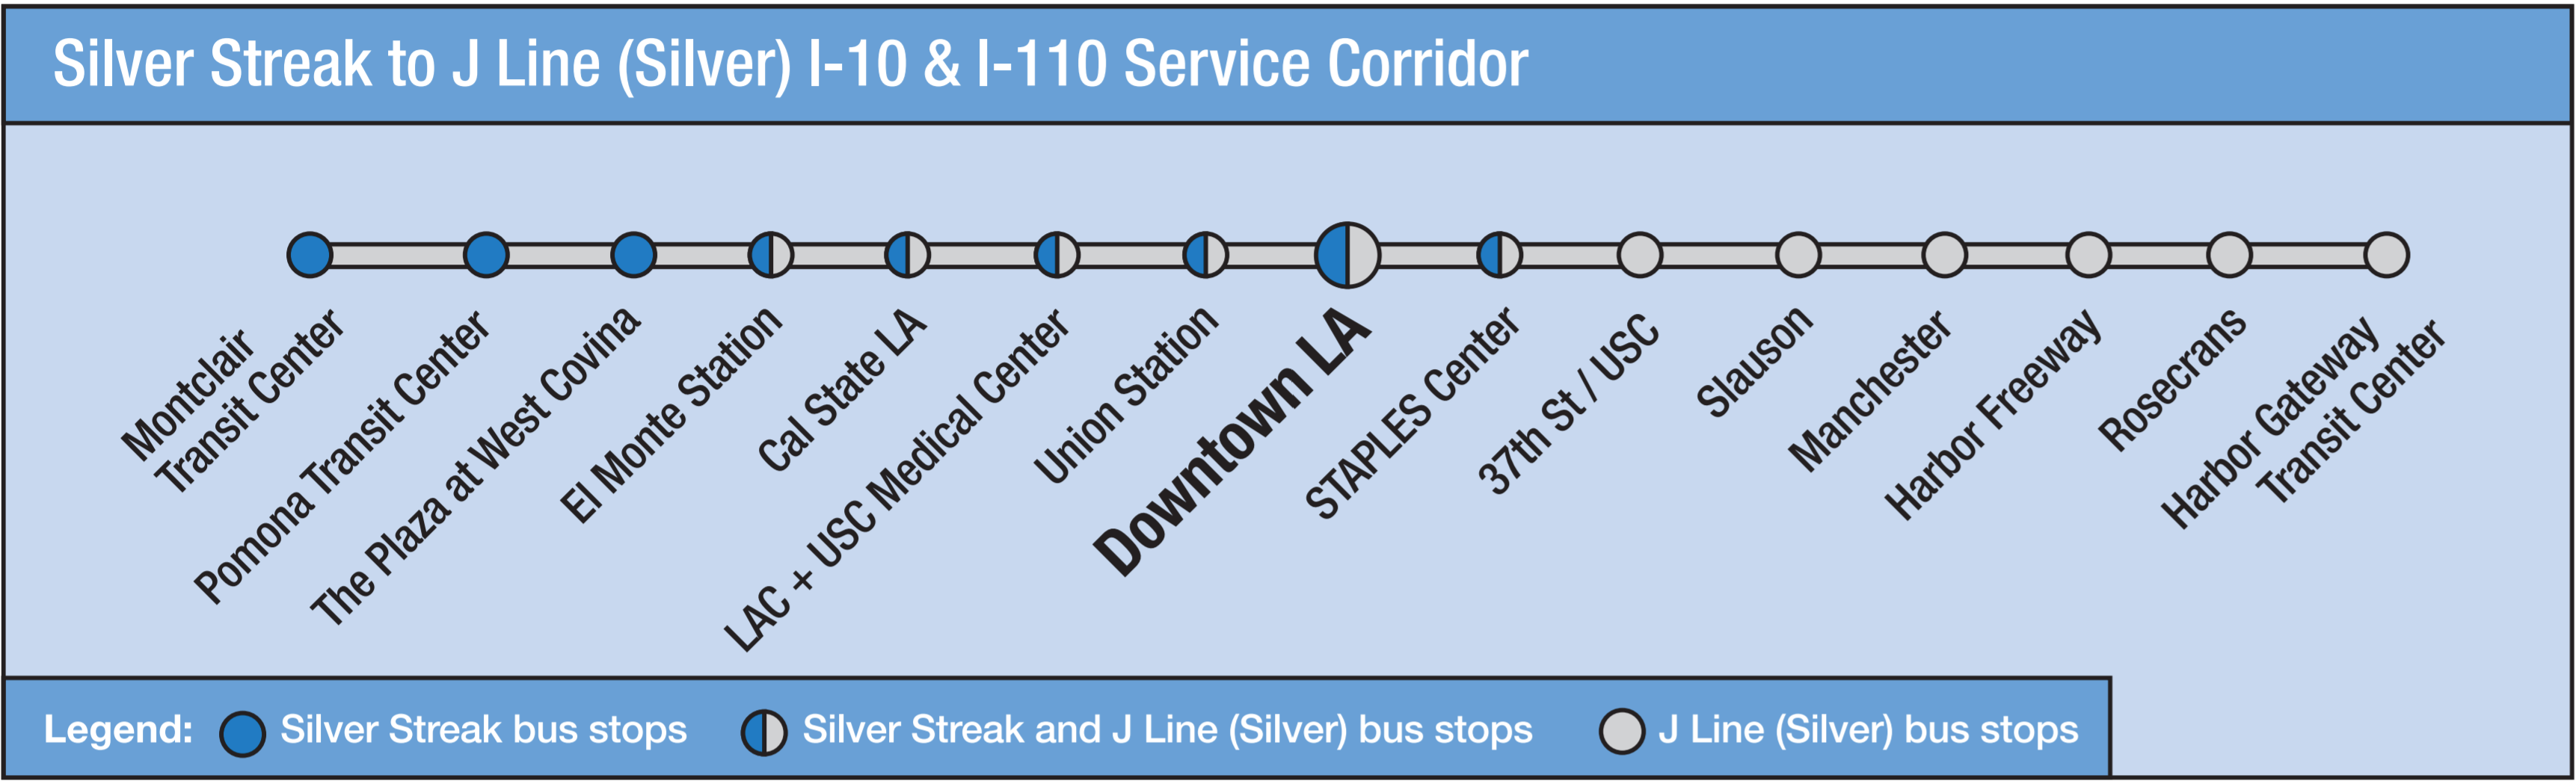 Silver Streak to J Line Map